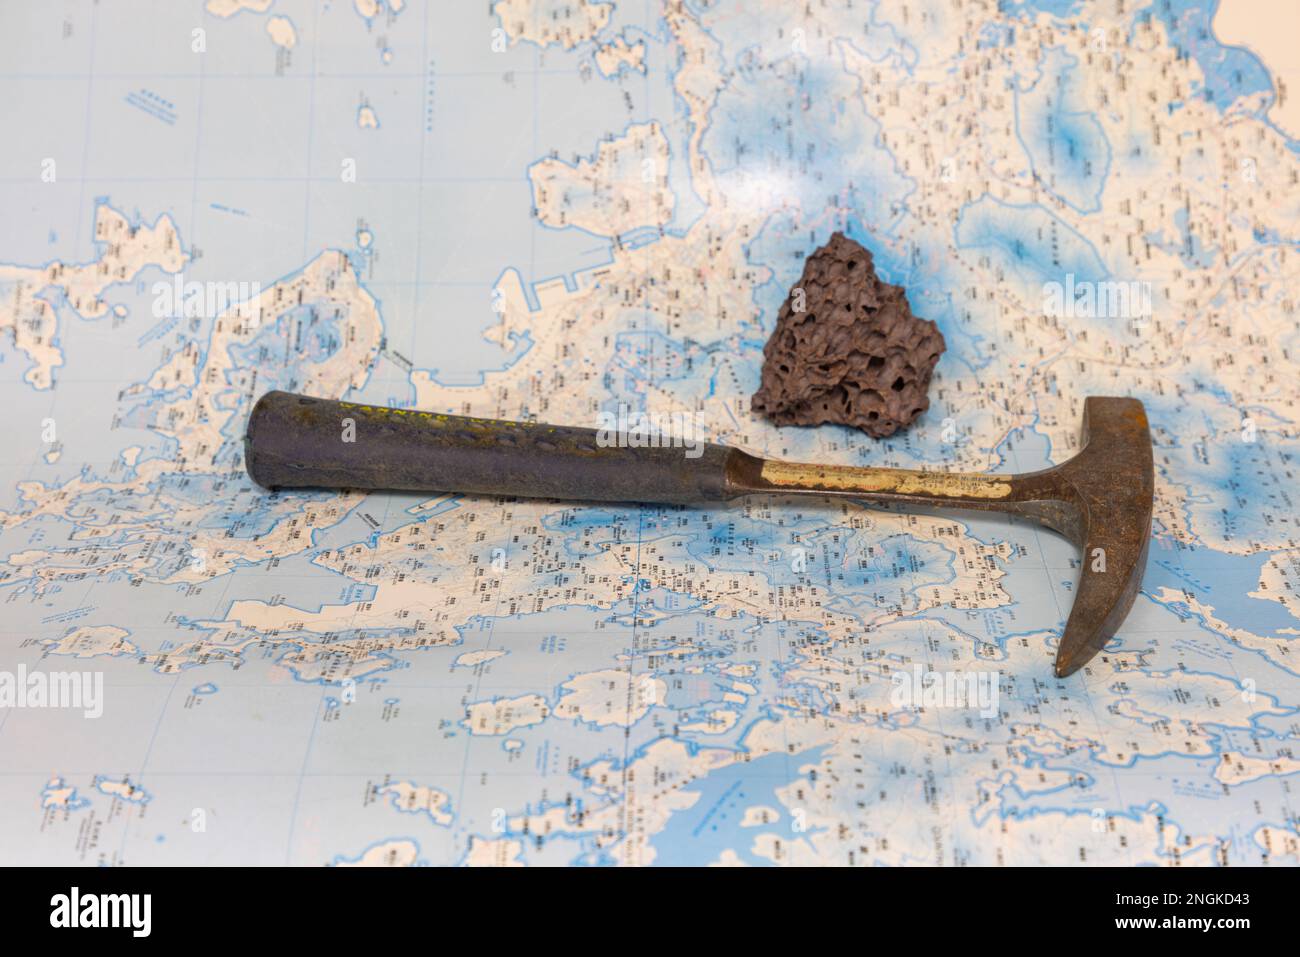 Outils de travail géologique sur le terrain : marteau, boussole, loupe, échantillons de roche, cartes topographiques et géologiques Banque D'Images